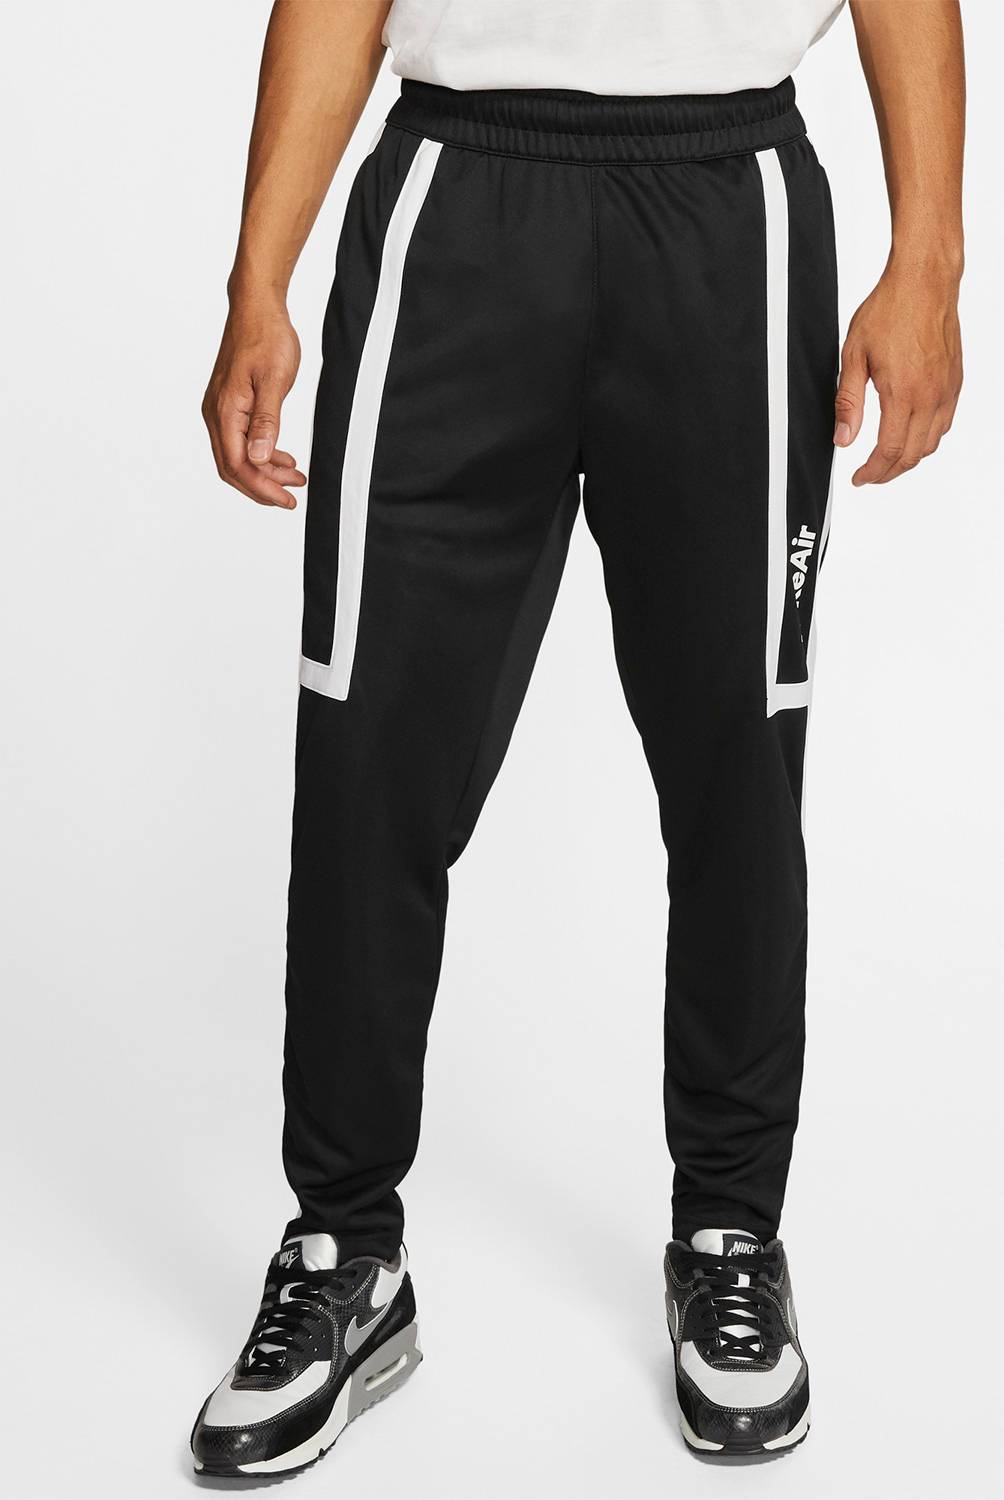 Nike - Pantalón de buzo Hombre CJ4838-010